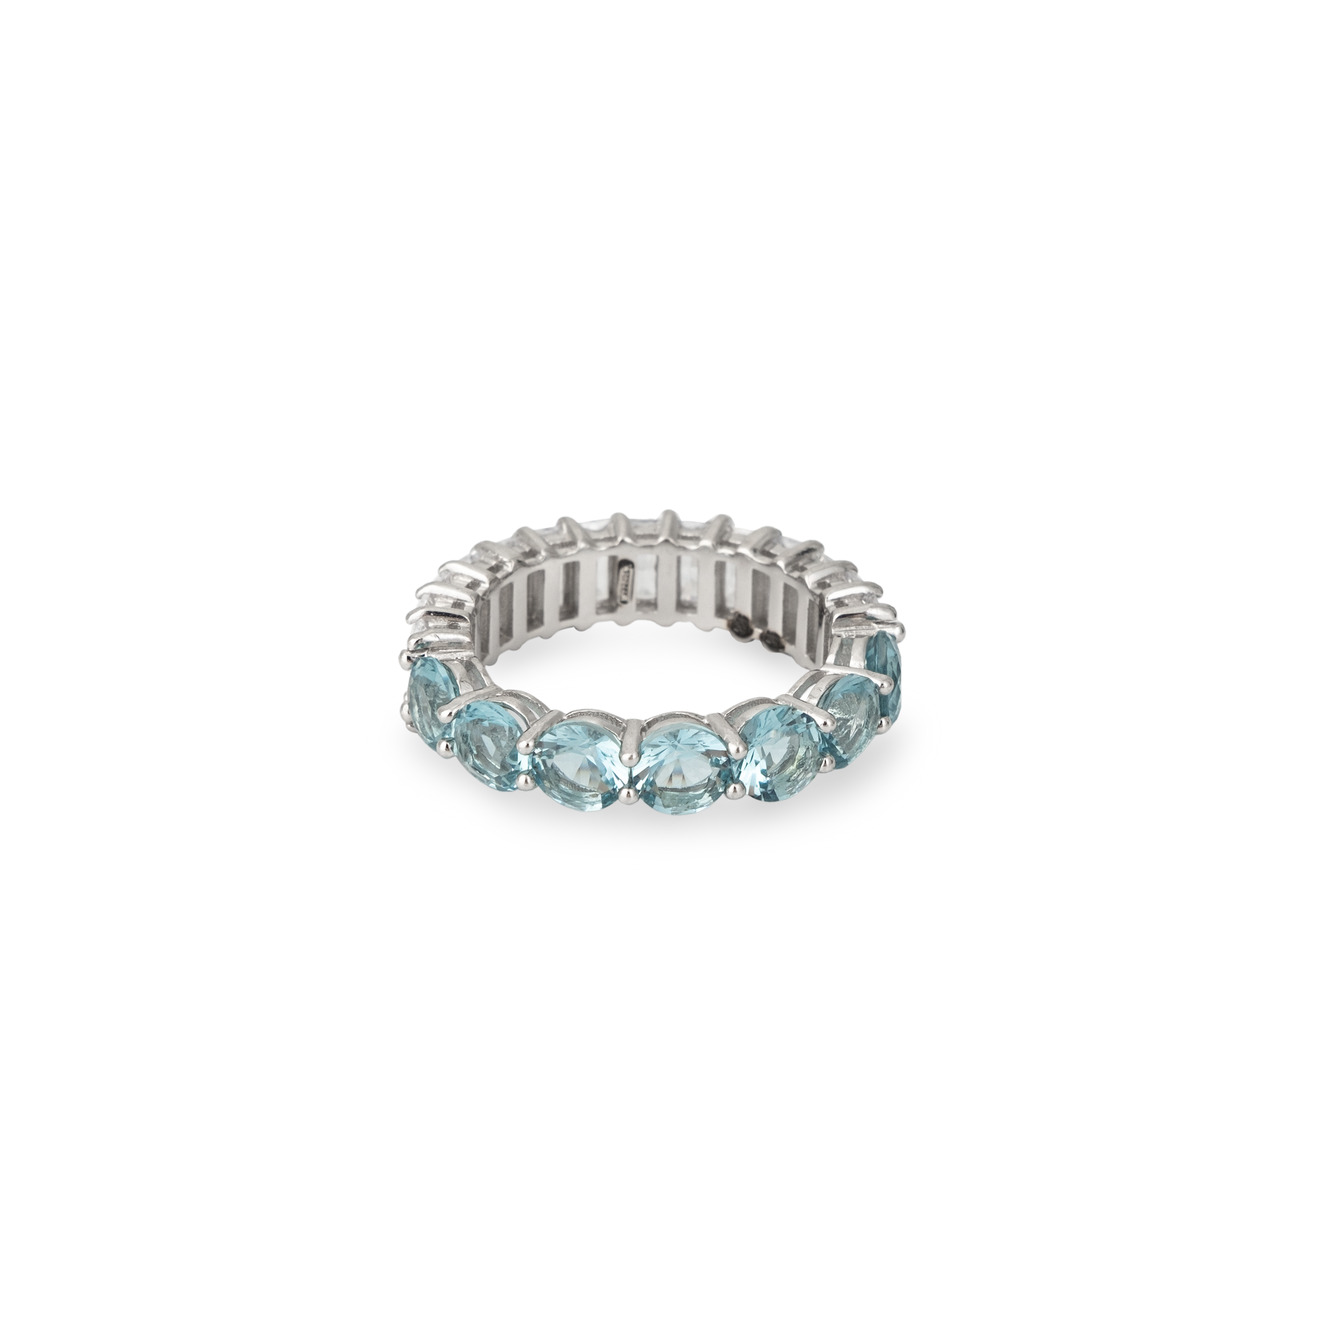 Holy Silver Кольцо-дорожка из серебра с голубыми и белыми кристаллами разной формы holy silver крупные серьги кольца из серебра с черными кристаллами